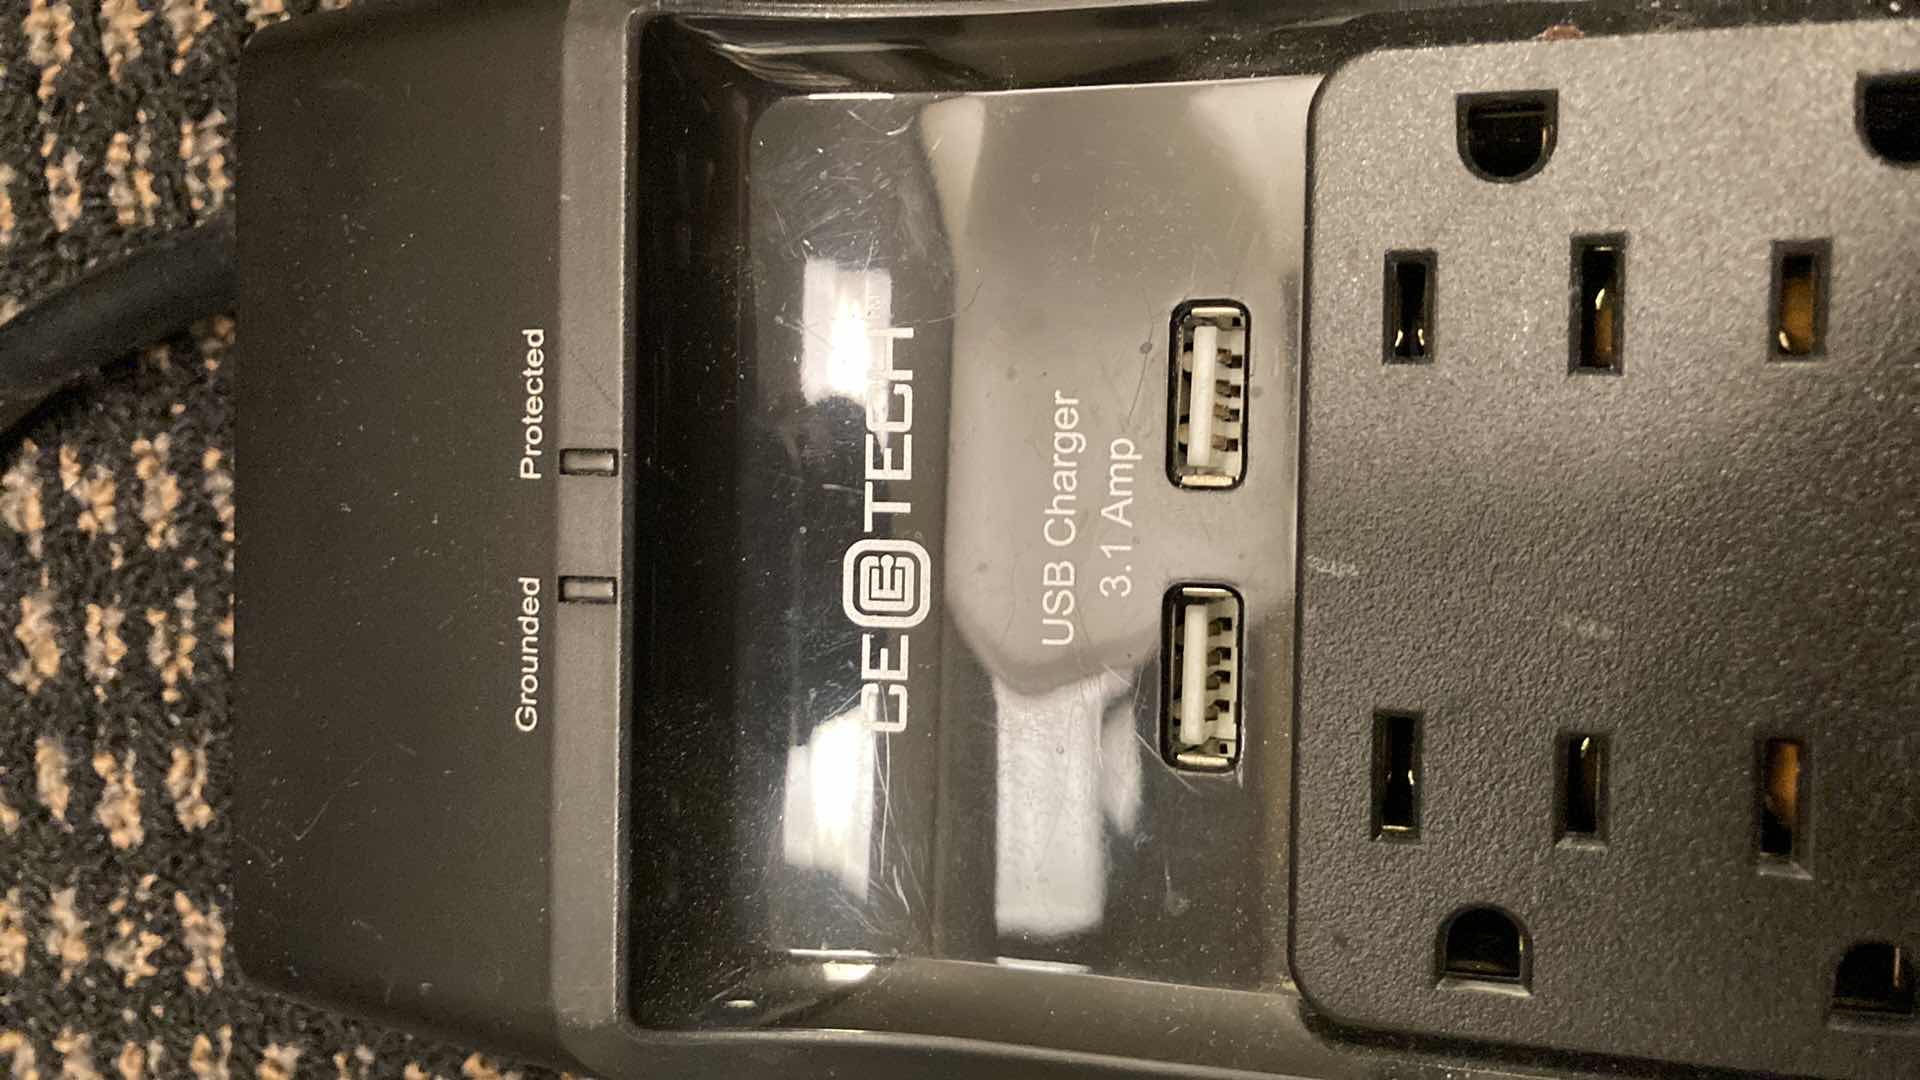 Photo 2 of CE TECH W USB PORT POWER STRIP